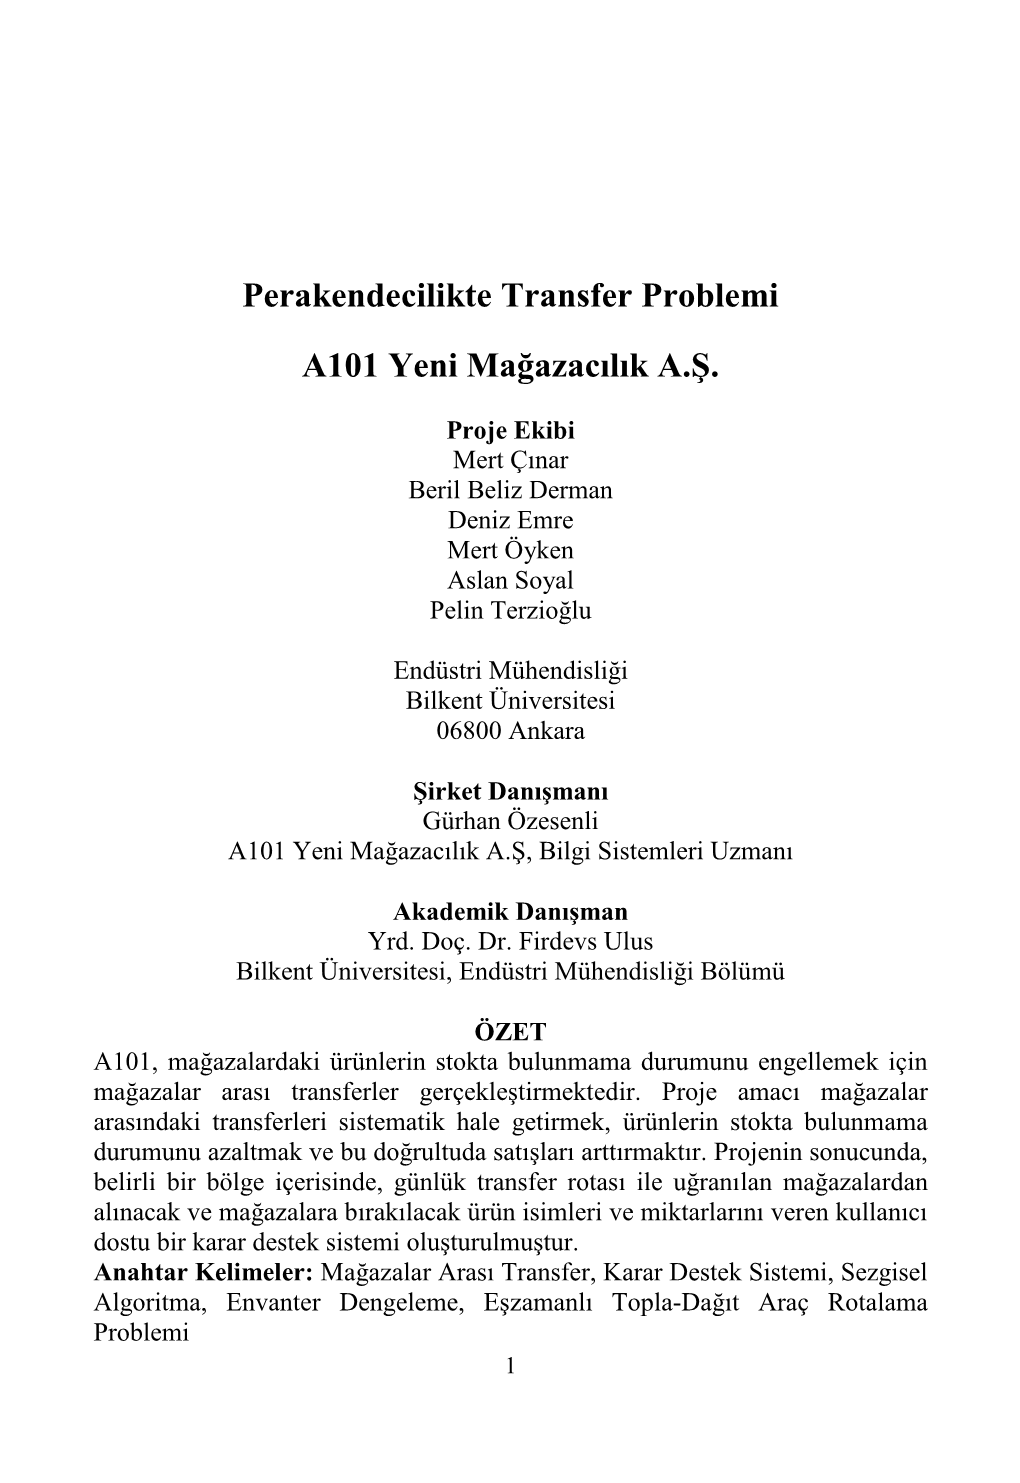 Perakendecilikte Transfer Problemi A101 Yeni Mağazacılık A.Ş